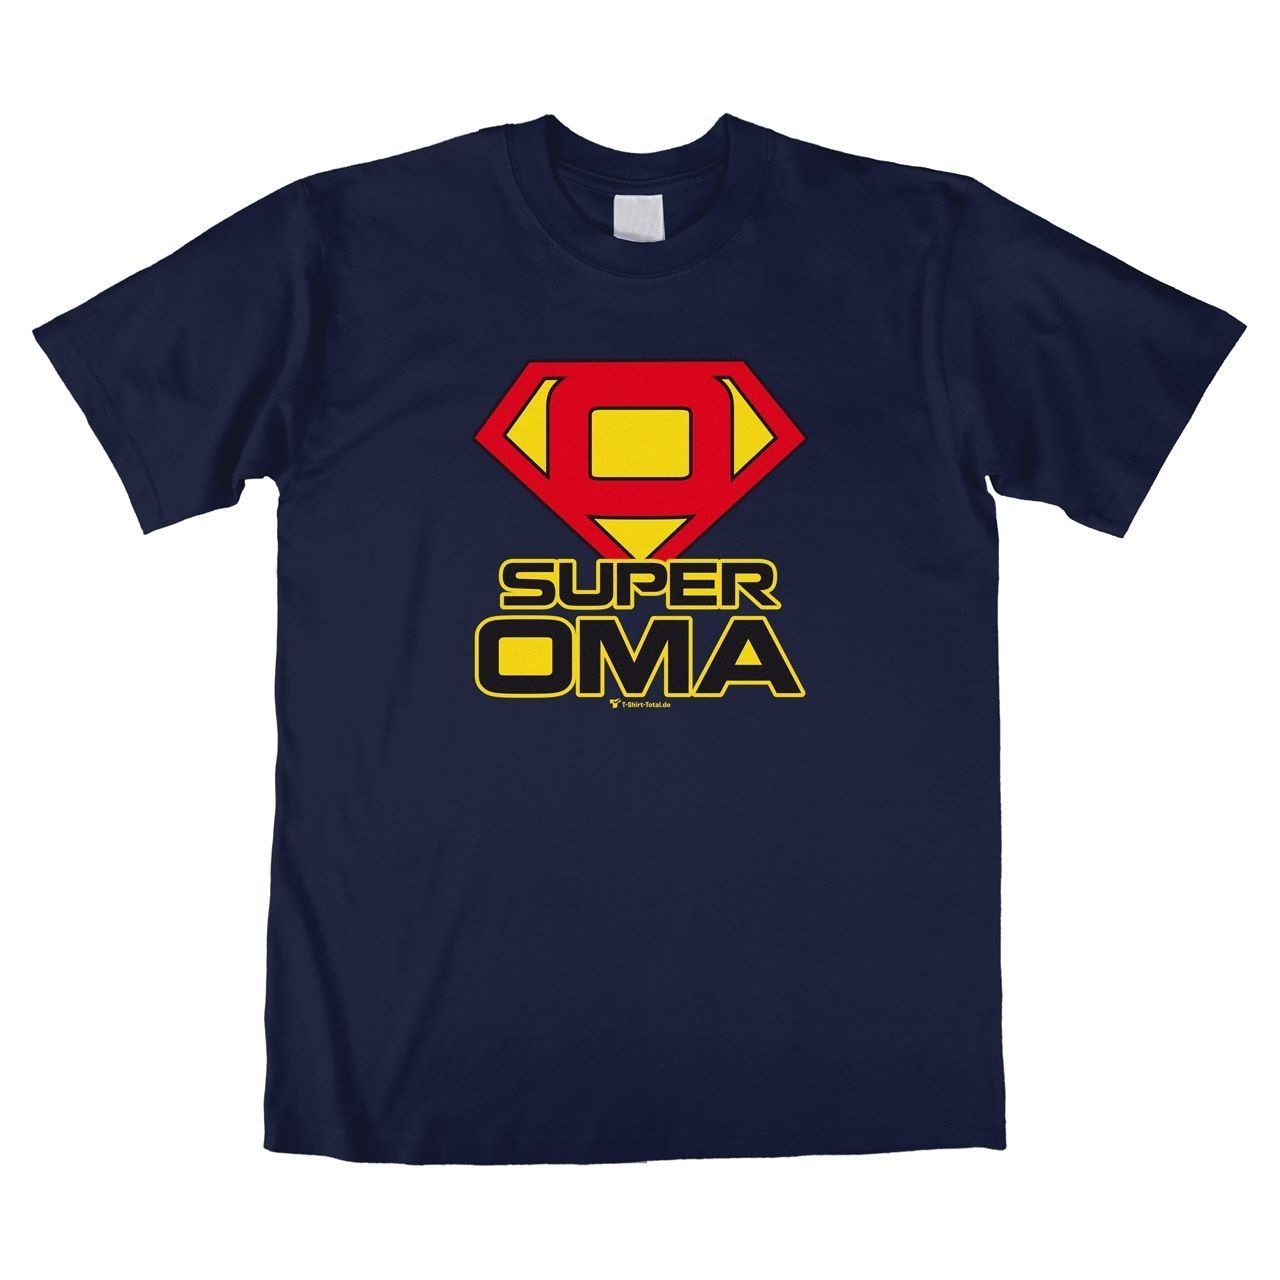 Super Oma Unisex T-Shirt navy Medium